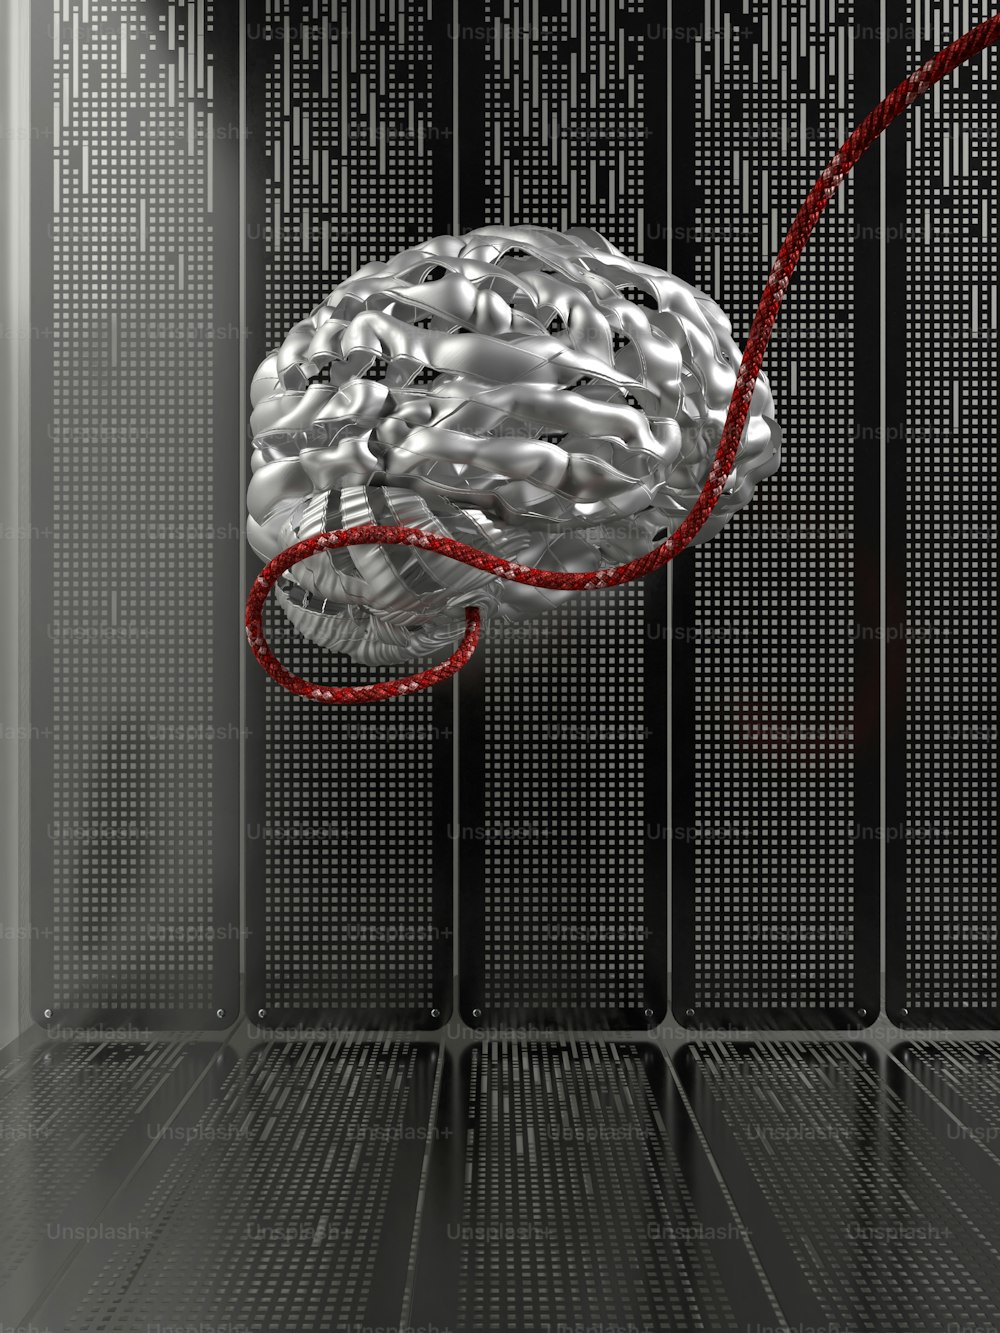 Ein Gehirn in einem Serverraum, an dem eine rote Schnur angeschlossen ist